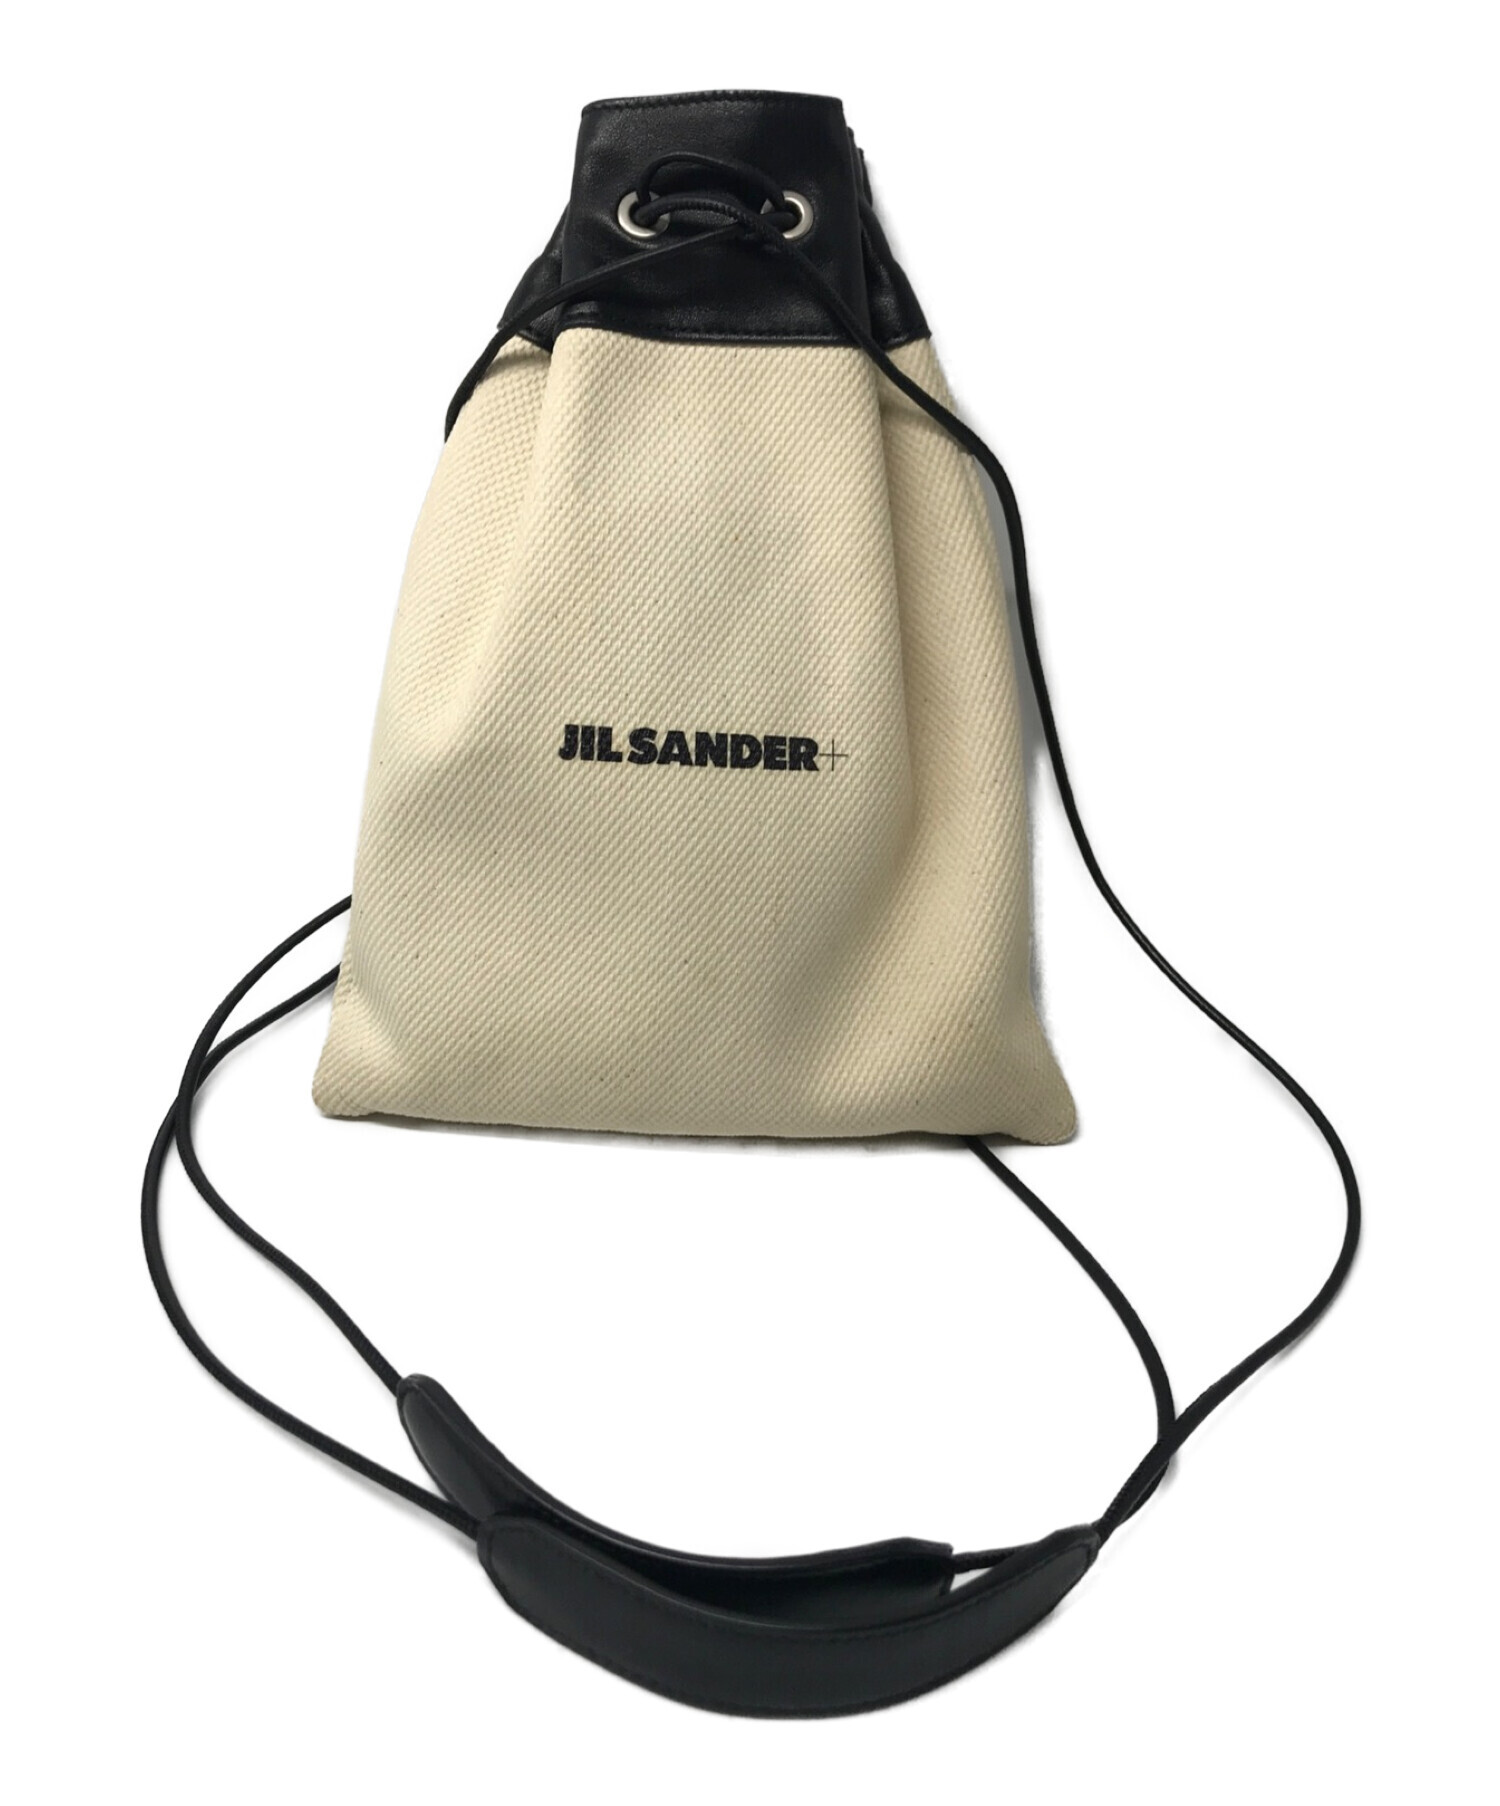 ジルサンダー JIL SANDER ロゴ キャンバス 巾着 ショルダーバッグ即購入可能です